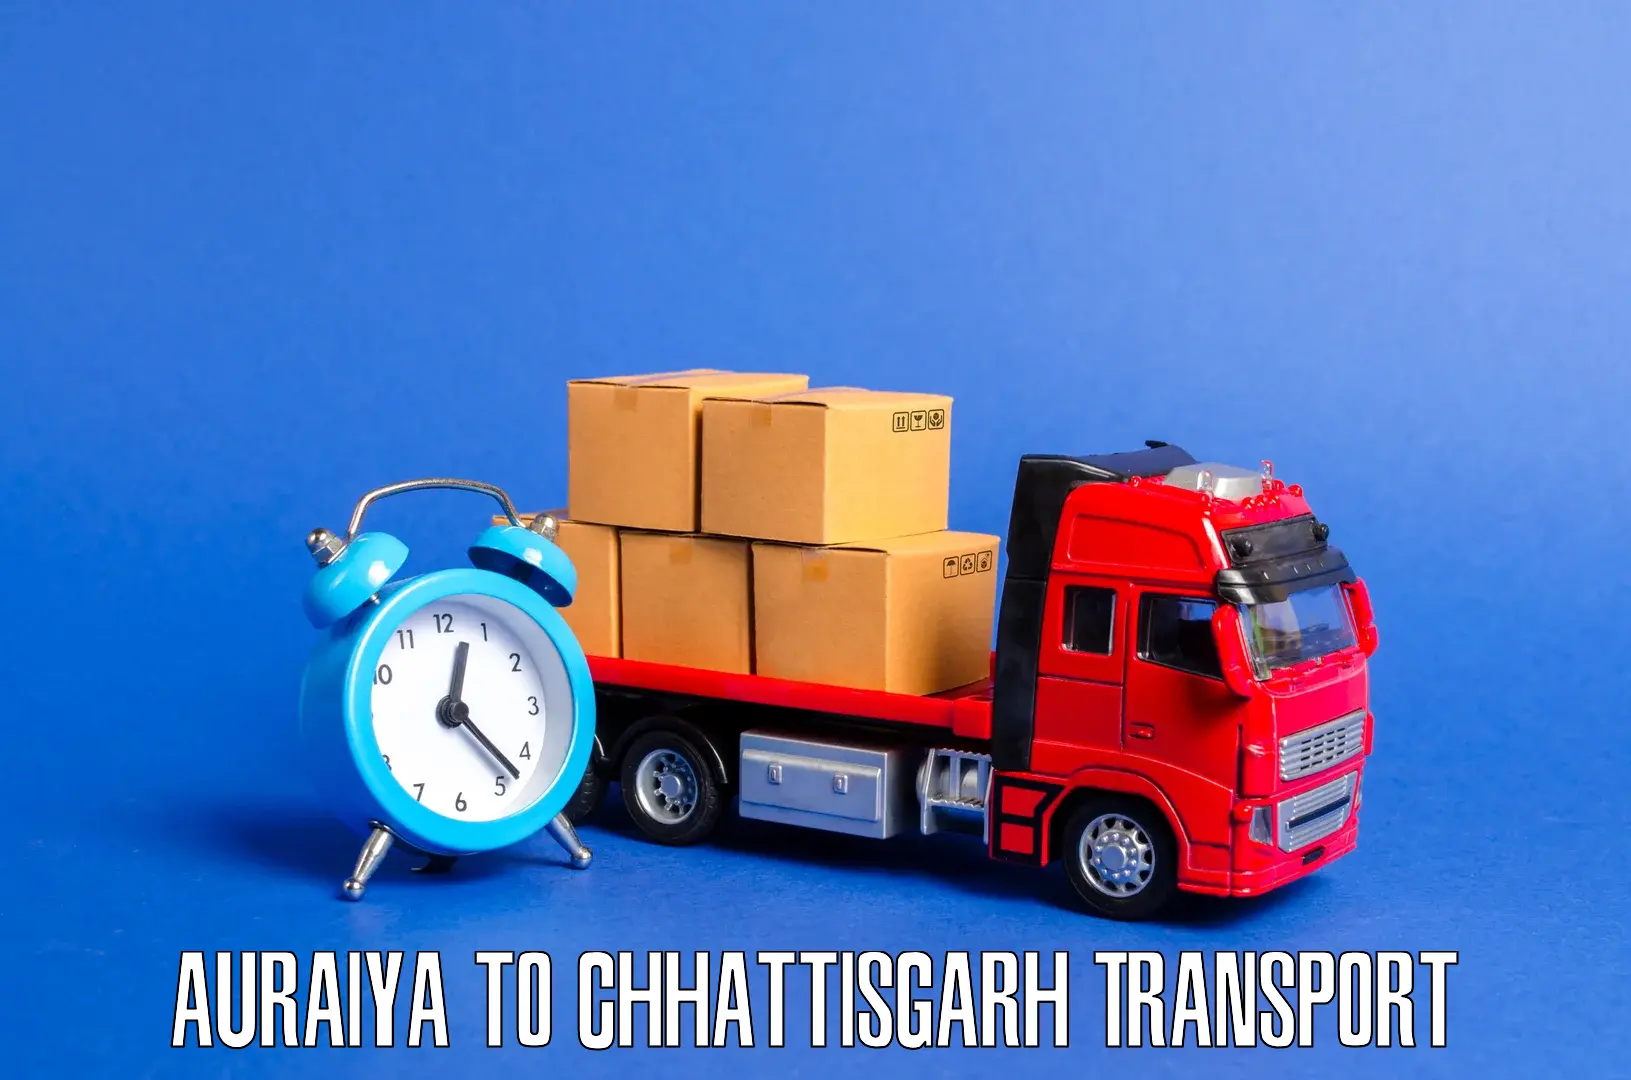 Furniture transport service Auraiya to Basna